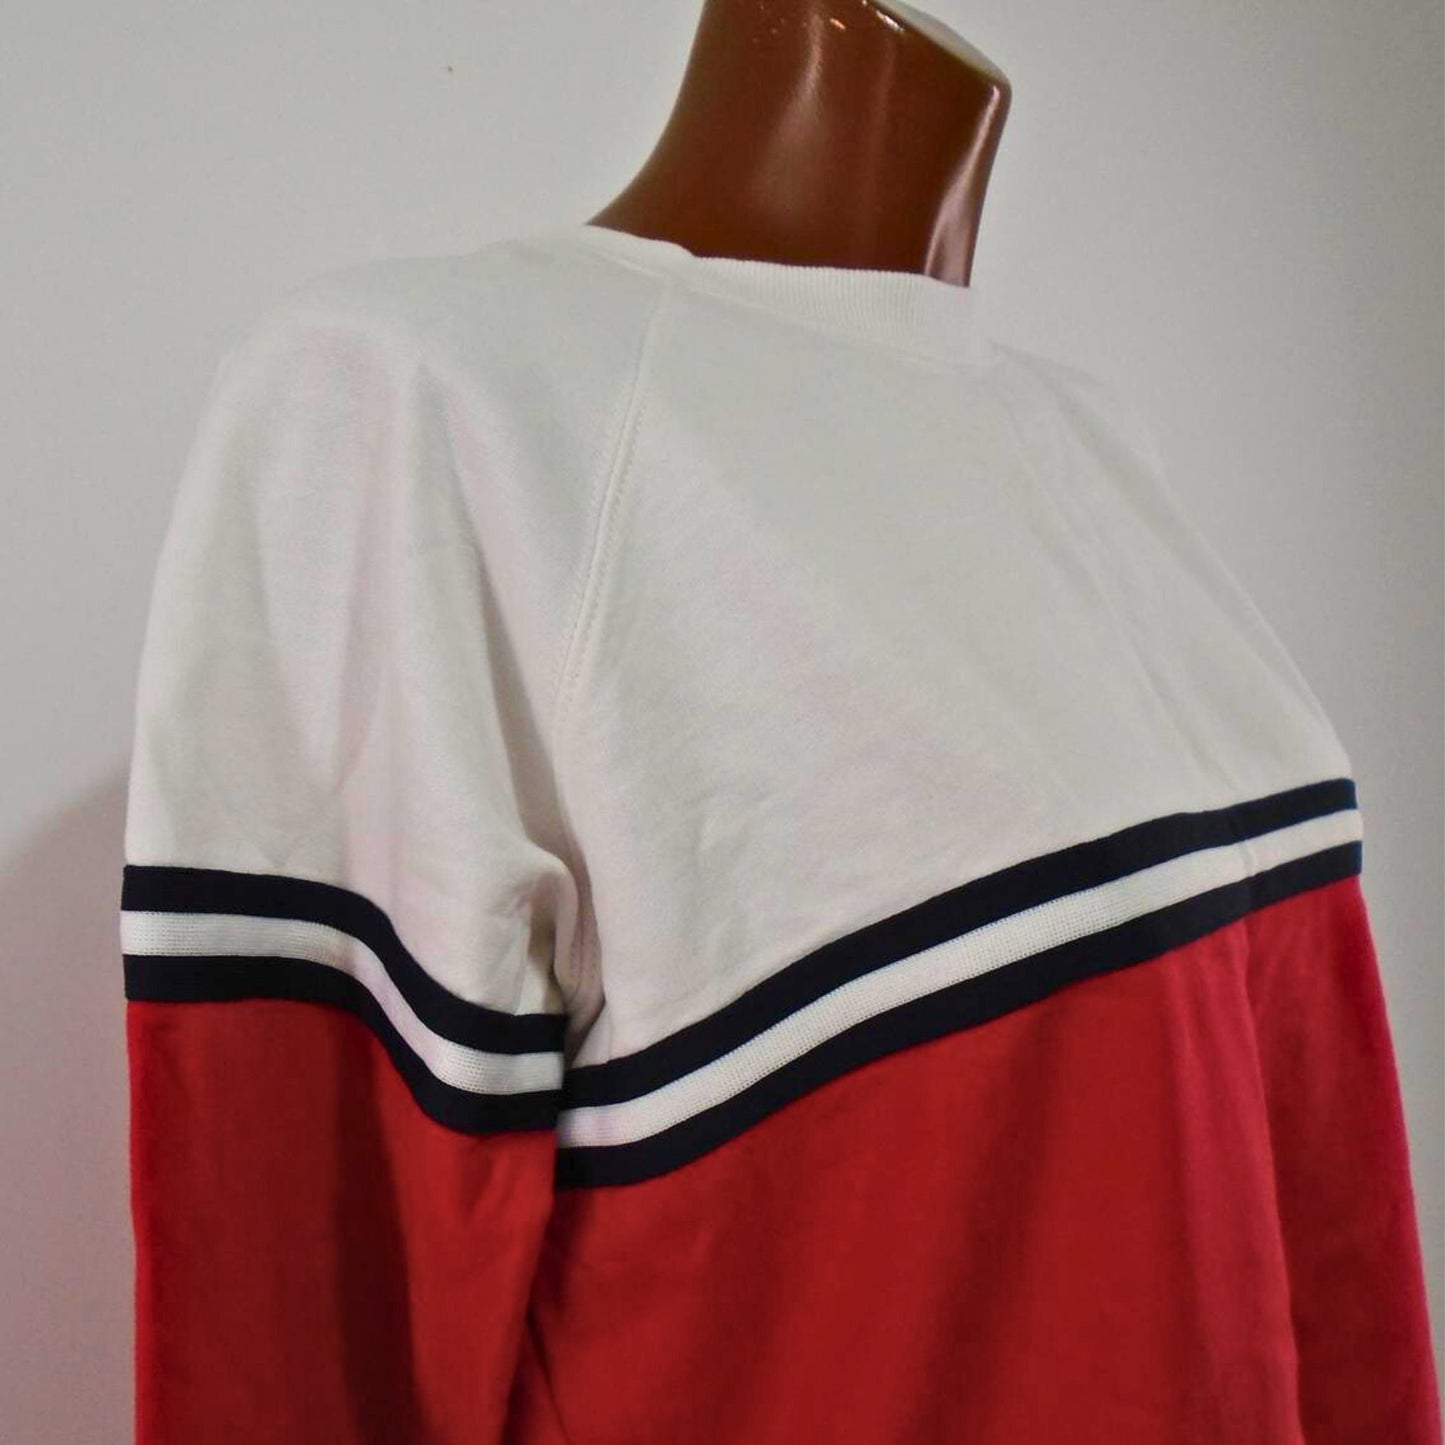 Schnappen Sie sich ein Schnäppchen für das mehrfarbige Damen-Sweatshirt von Green Coast, Größe S – gebraucht, guter Zustand!